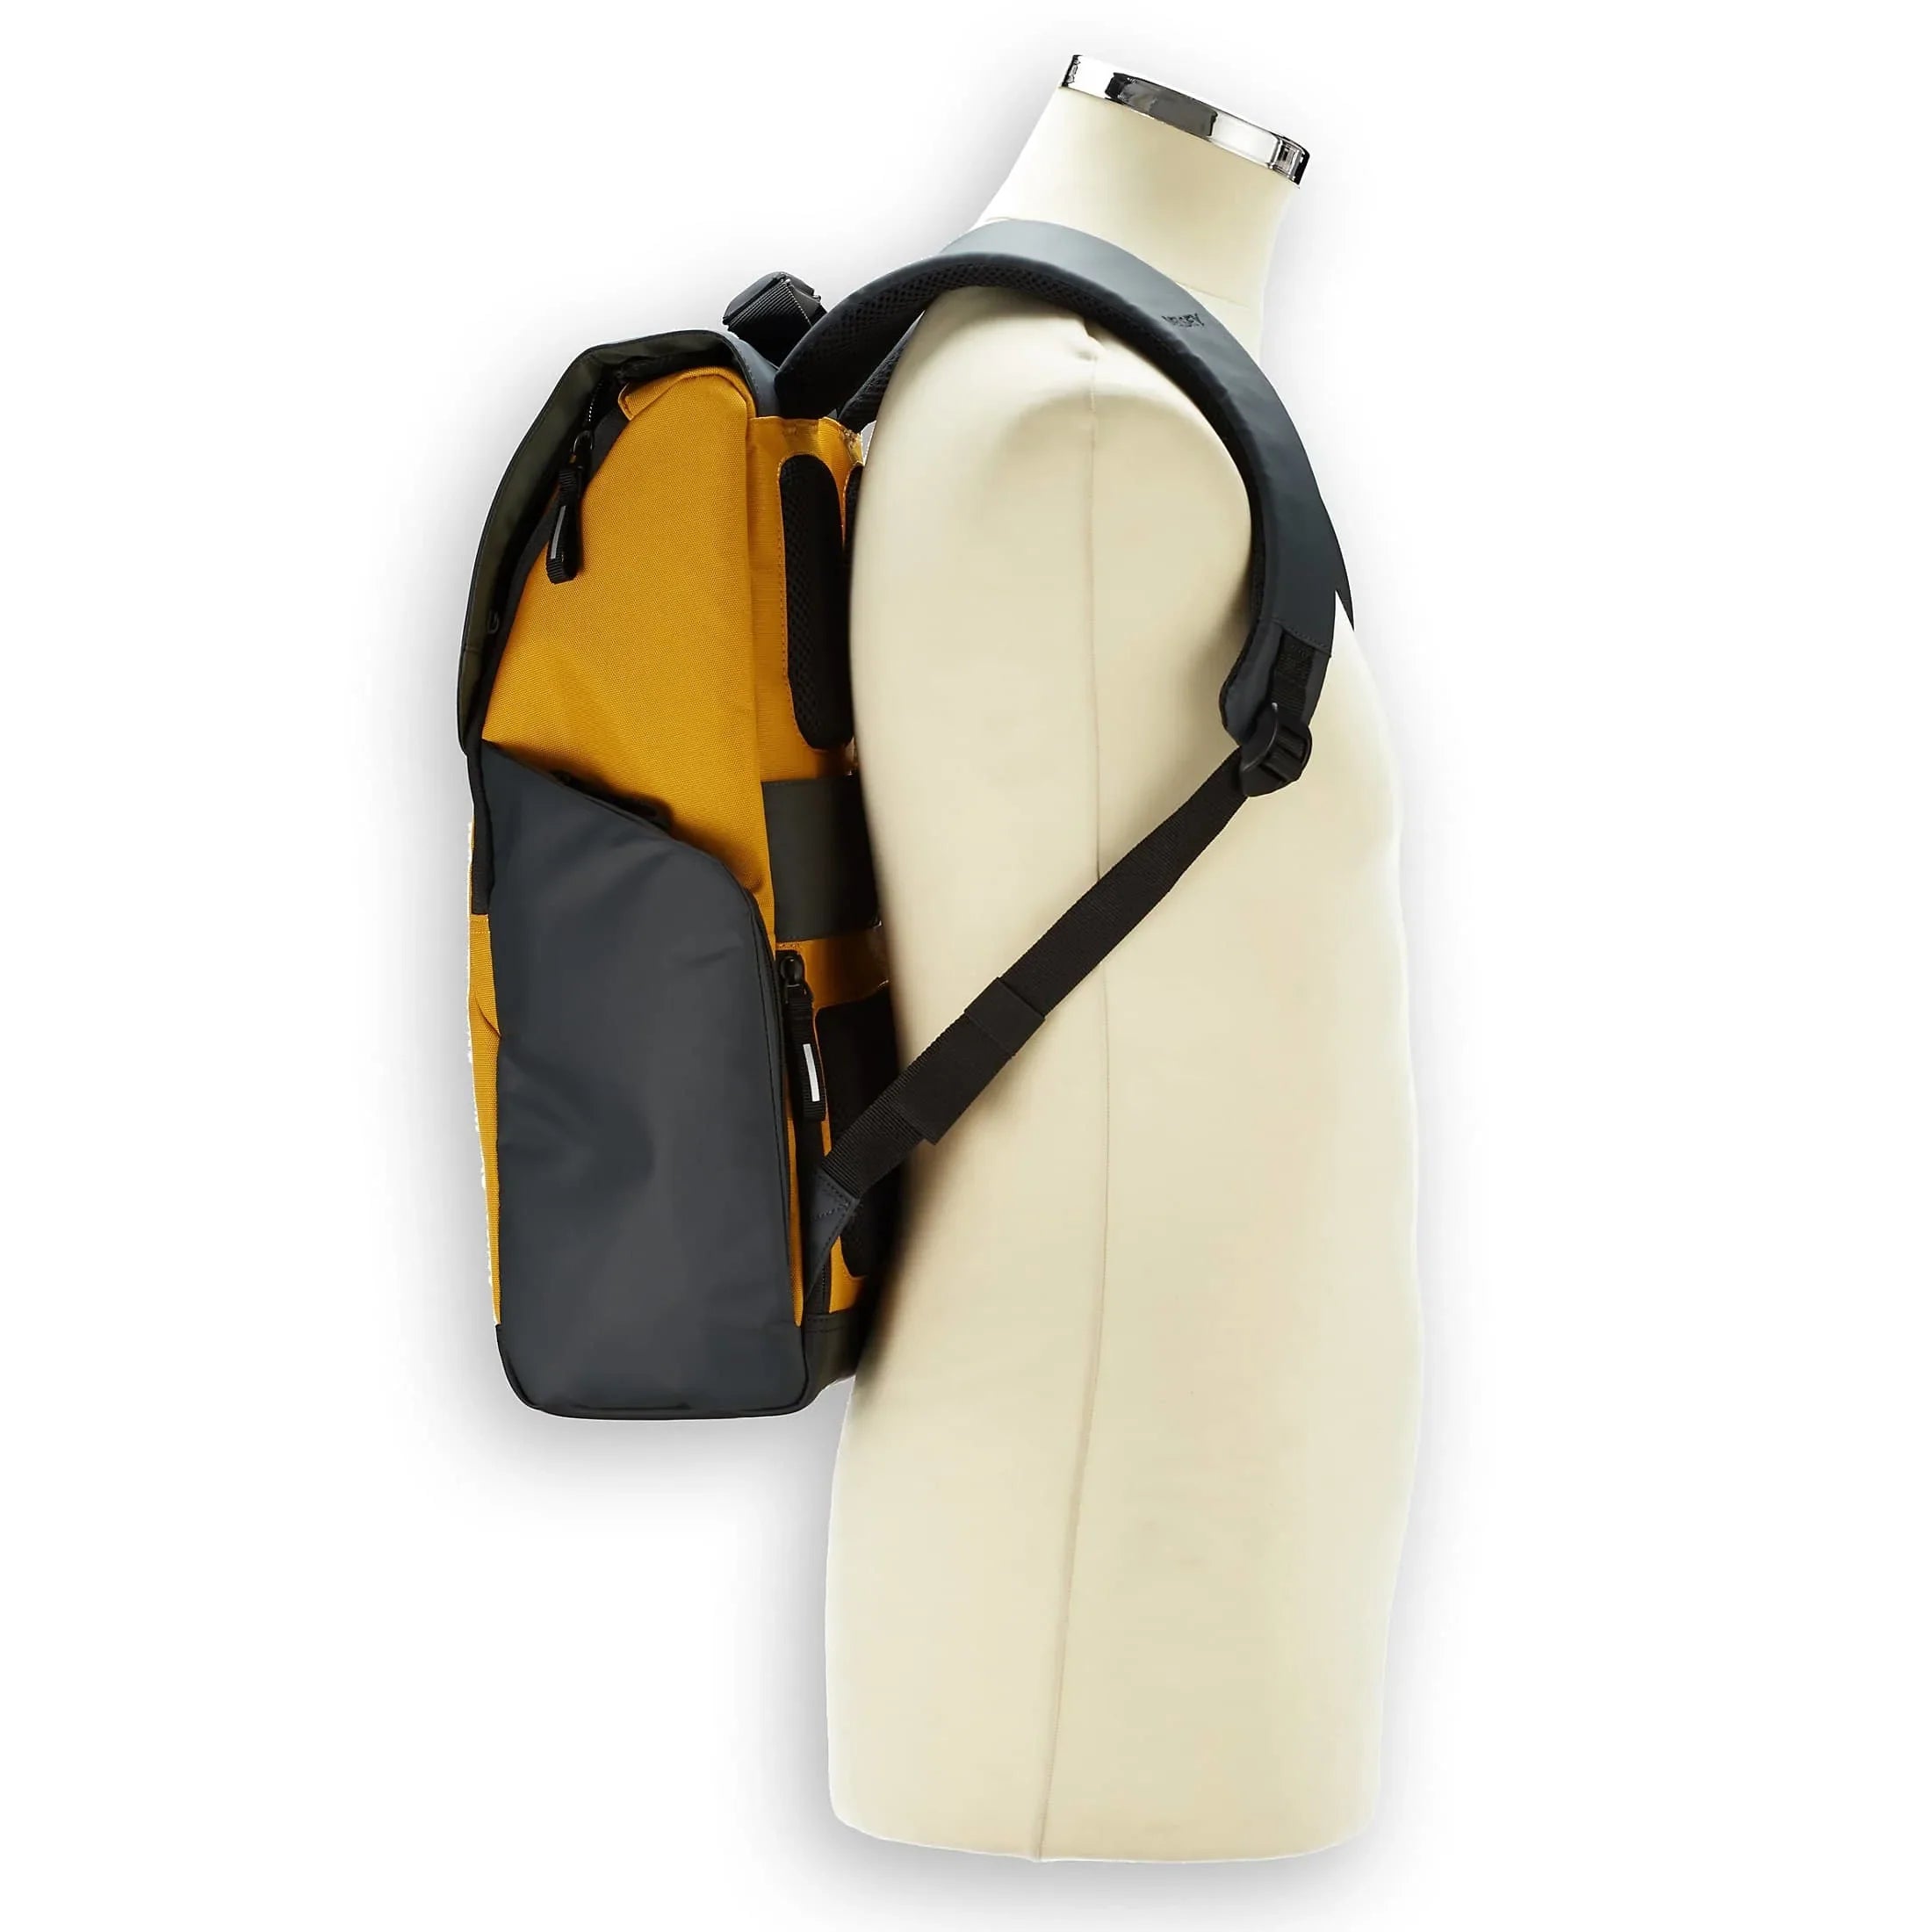 Delsey Securflap sac à dos pour ordinateur portable 46 cm - argent